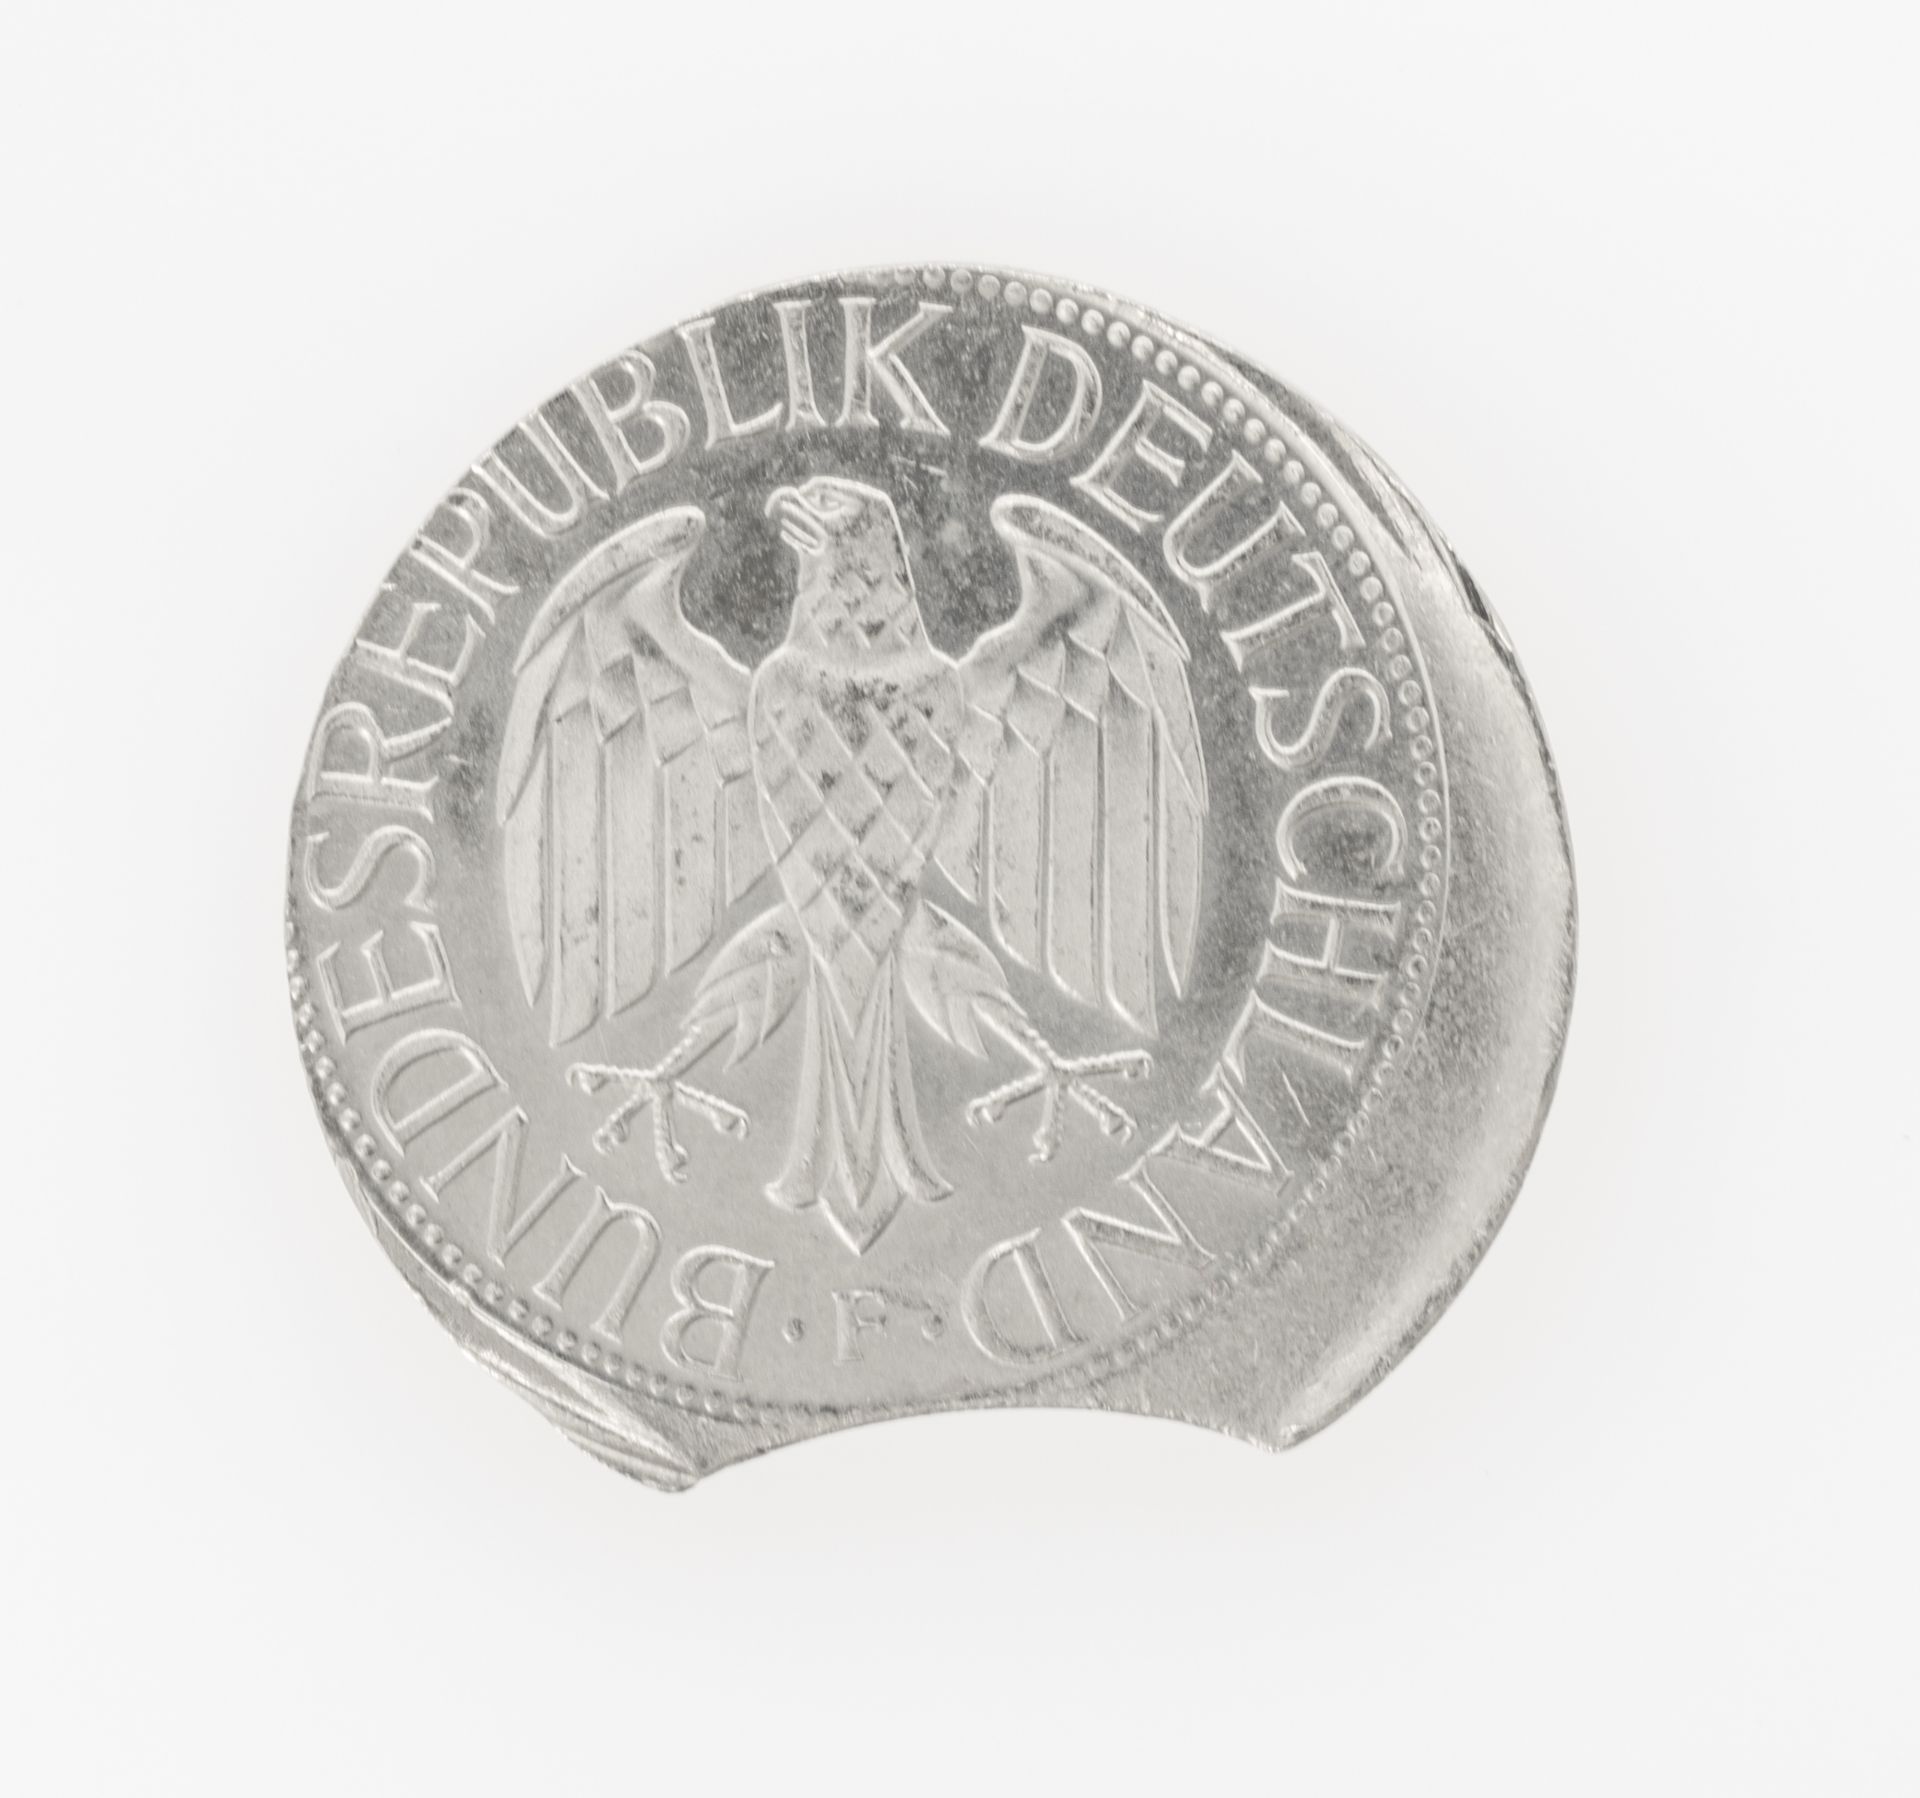 Deutschland 1984, 1.- DM - Münze Fehlprägung: Zainende und dezentral geprägt. - Bild 2 aus 2